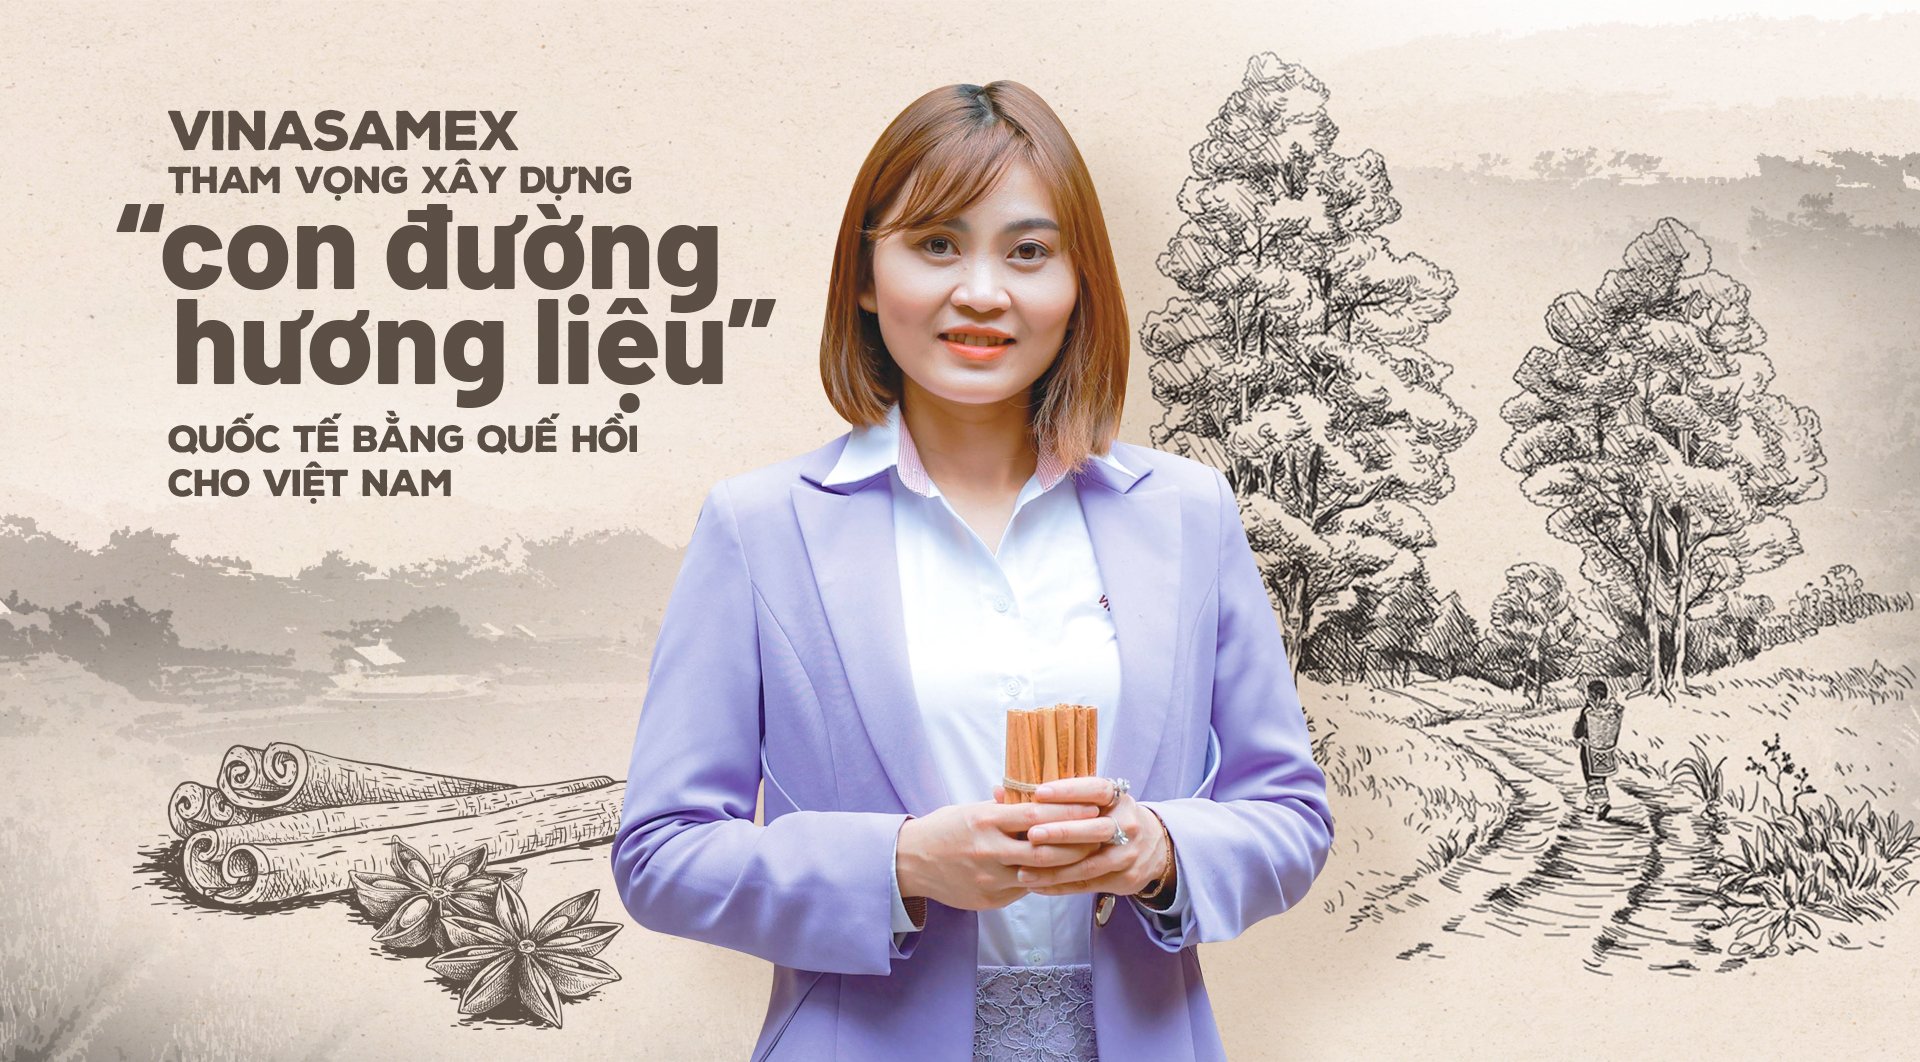 Xây dựng 'con đường hương liệu' quốc tế cho Việt Nam bằng quế hồi hữu cơ